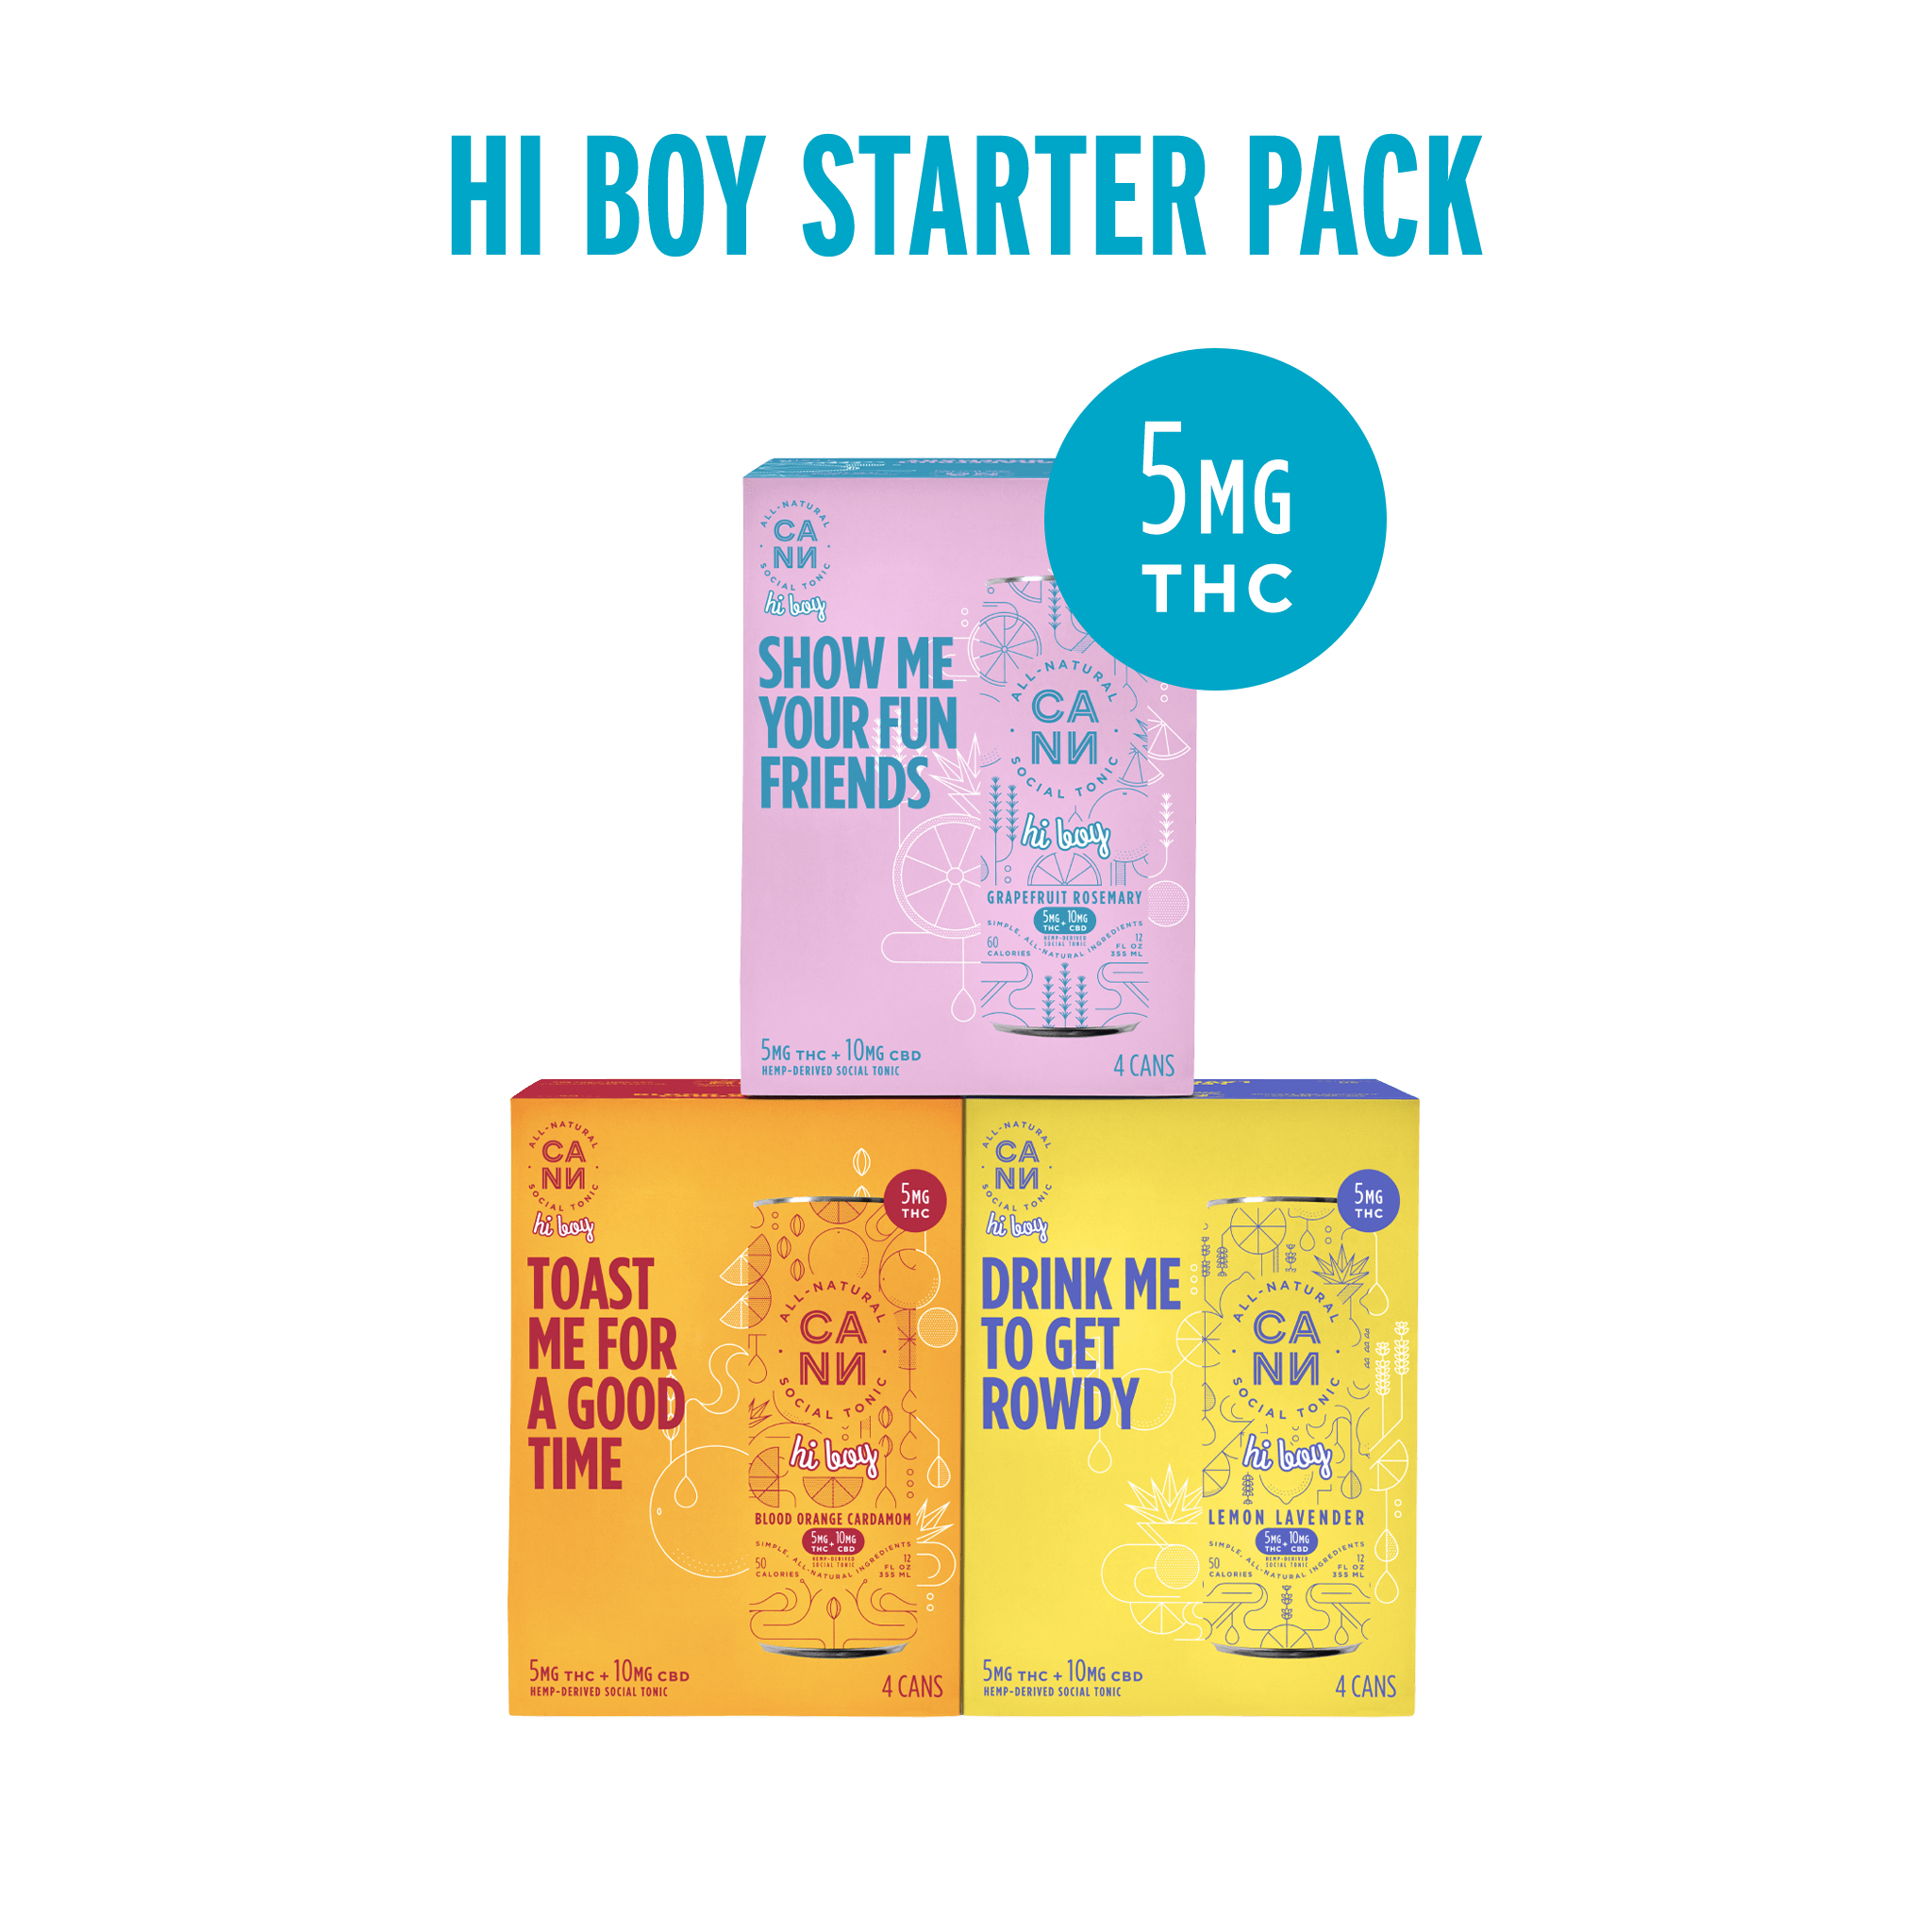 Hi Boy Starter Pack